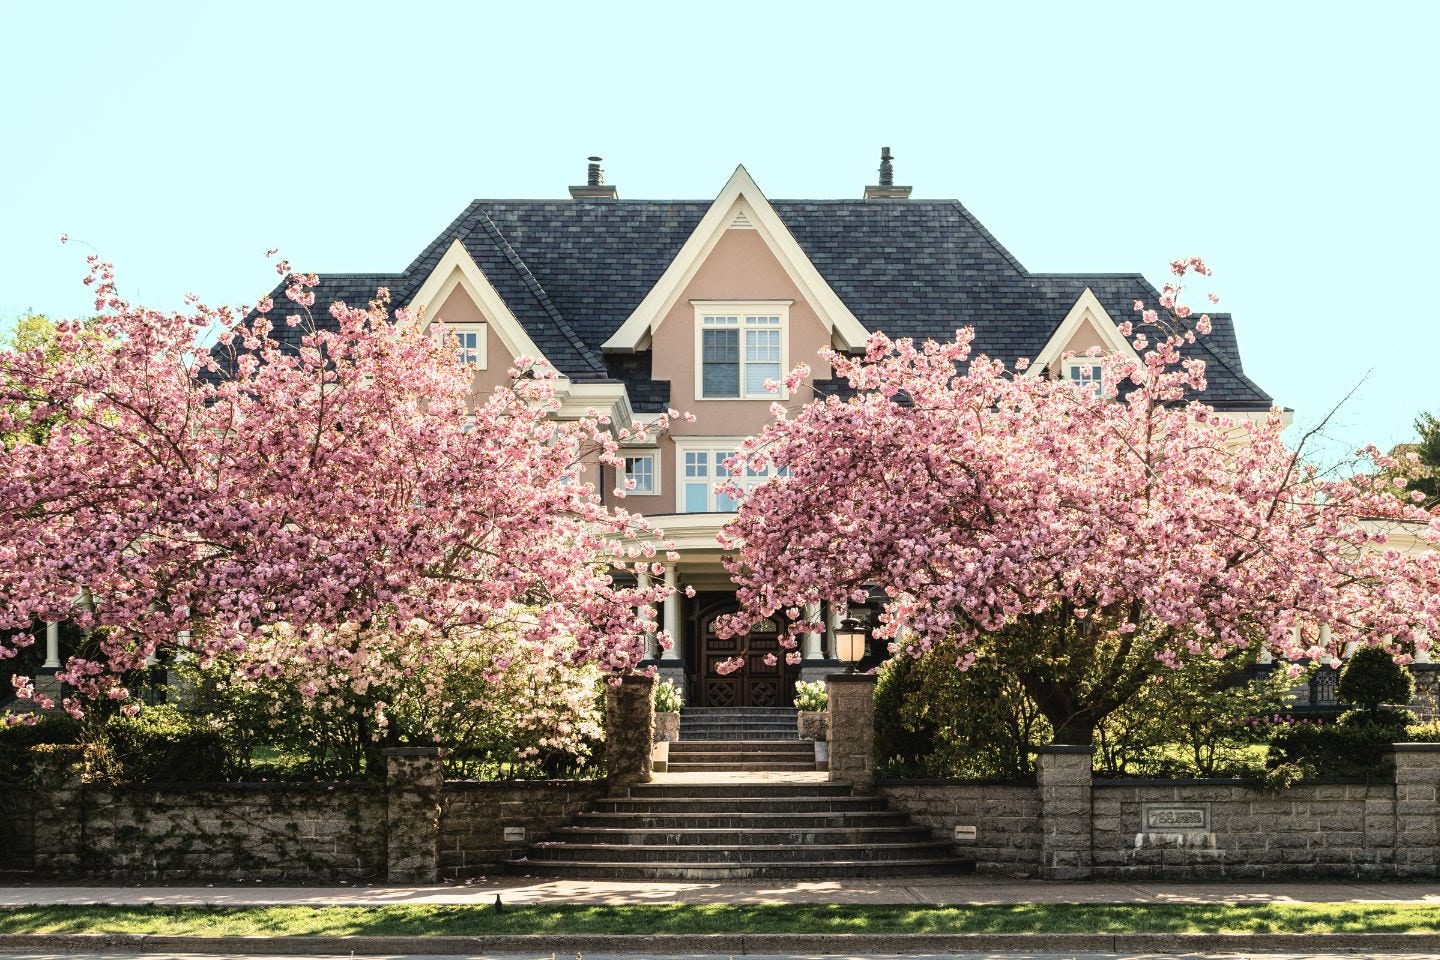 Une maison rose au toit en ardoise de face, entourée de cerisiers en fleur, dans une rue avec de l'herbe verte.